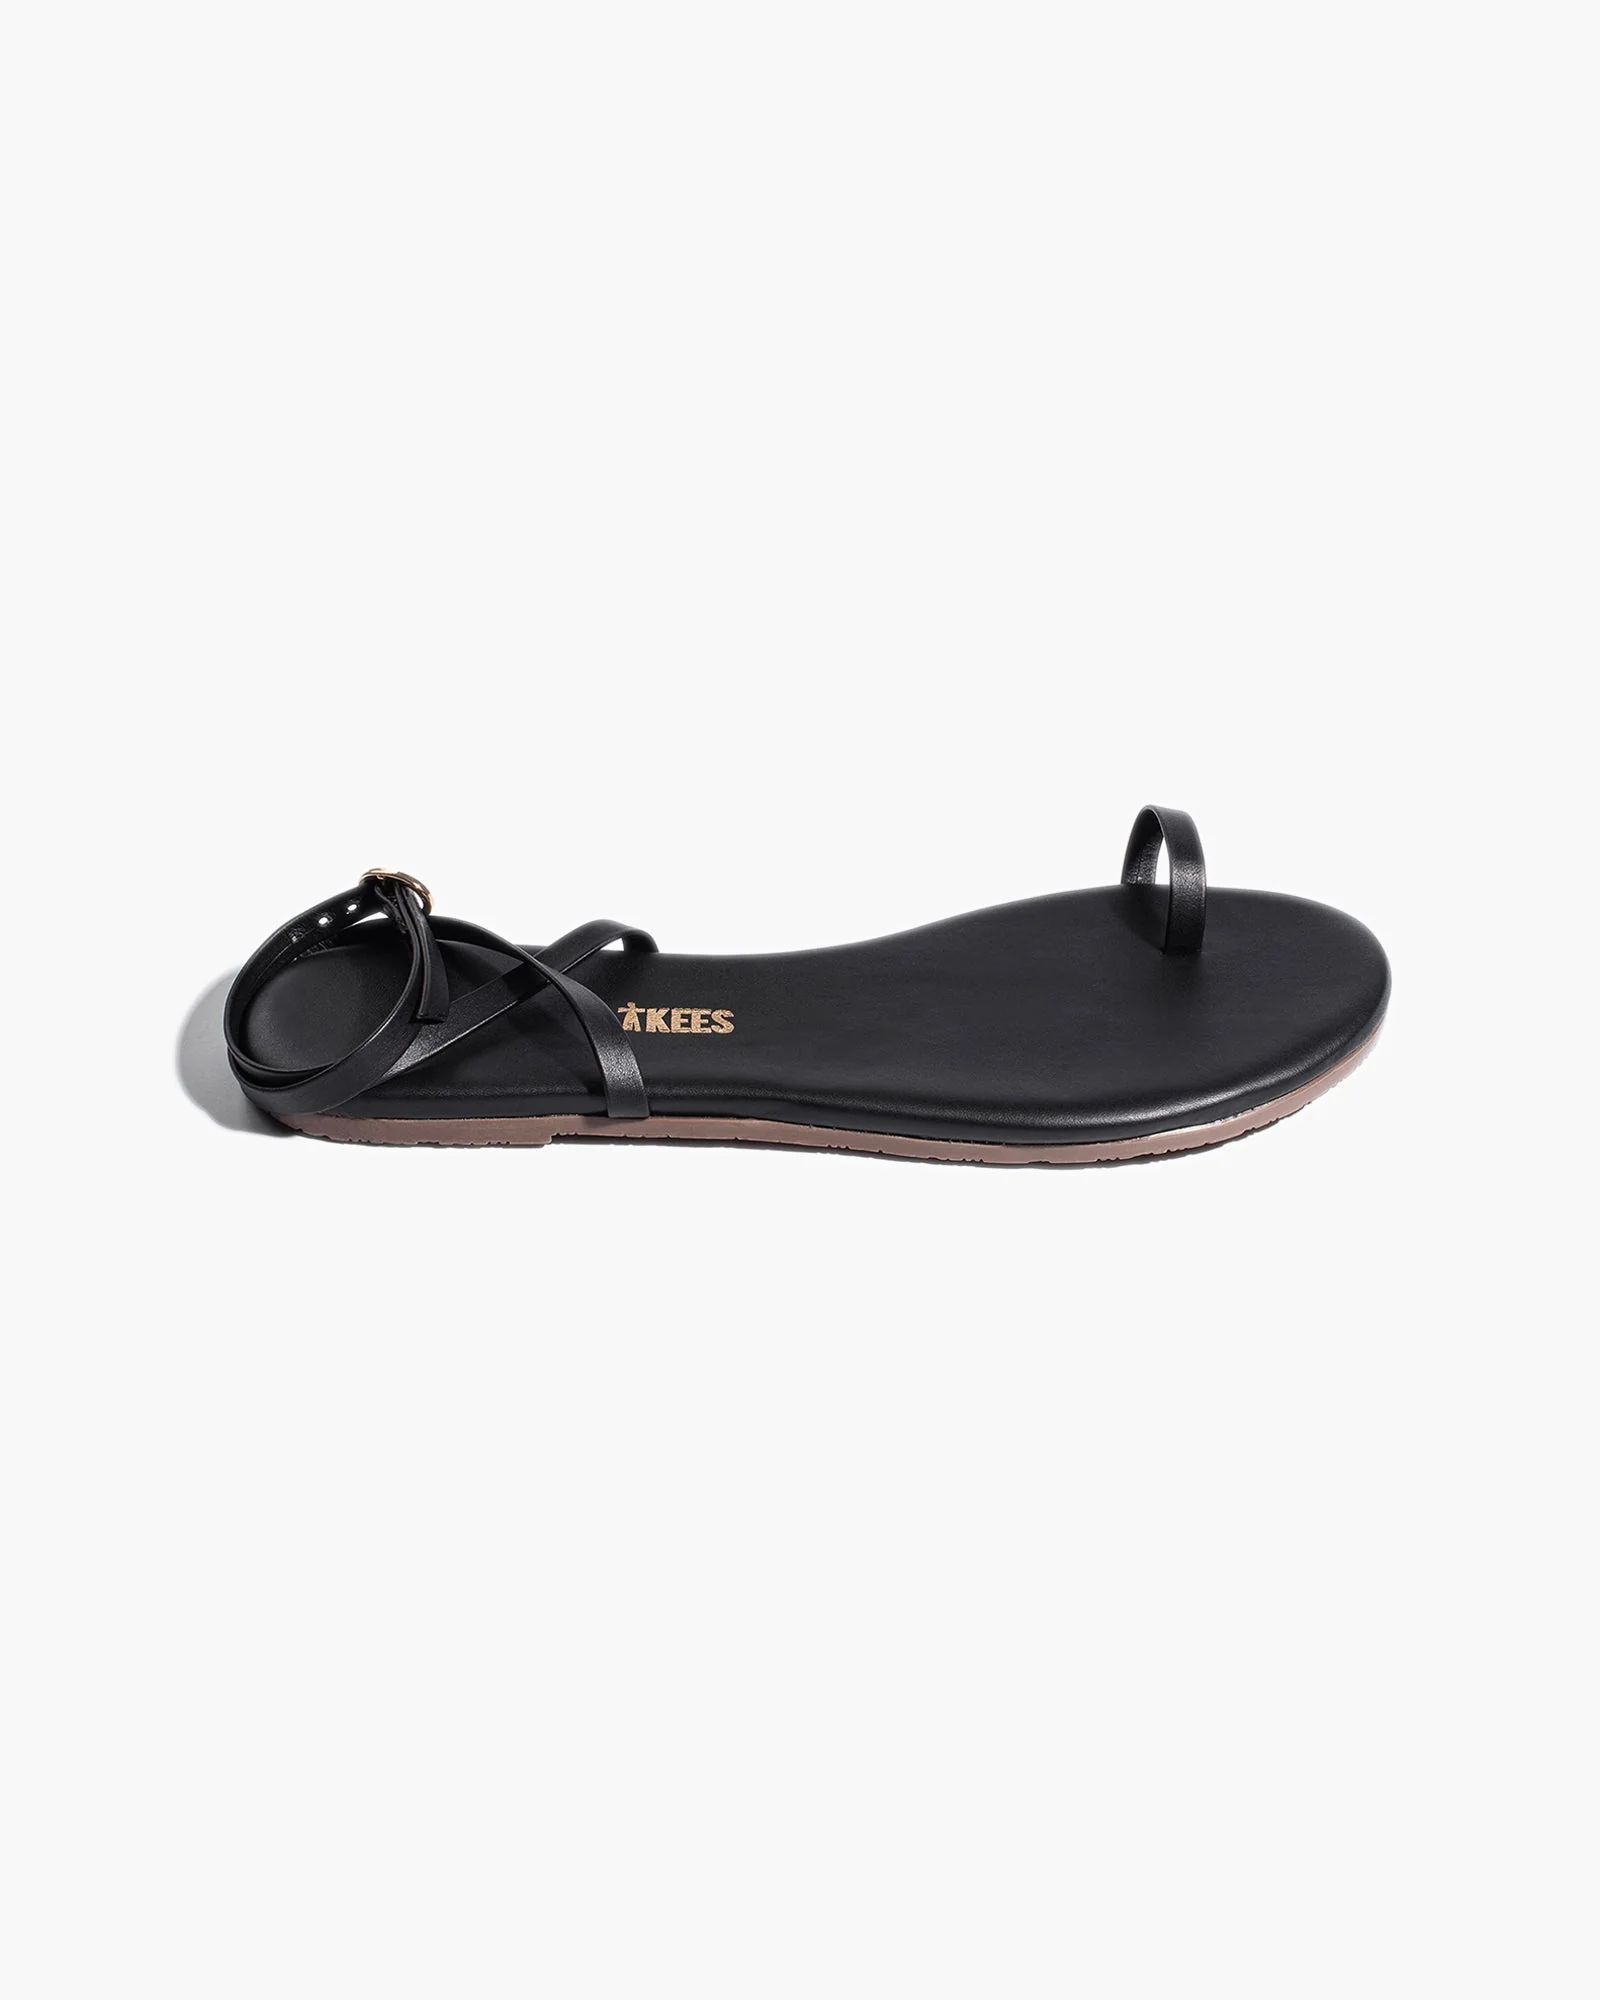 Phoebe in Black | Sandals | Women's Footwear | TKEES